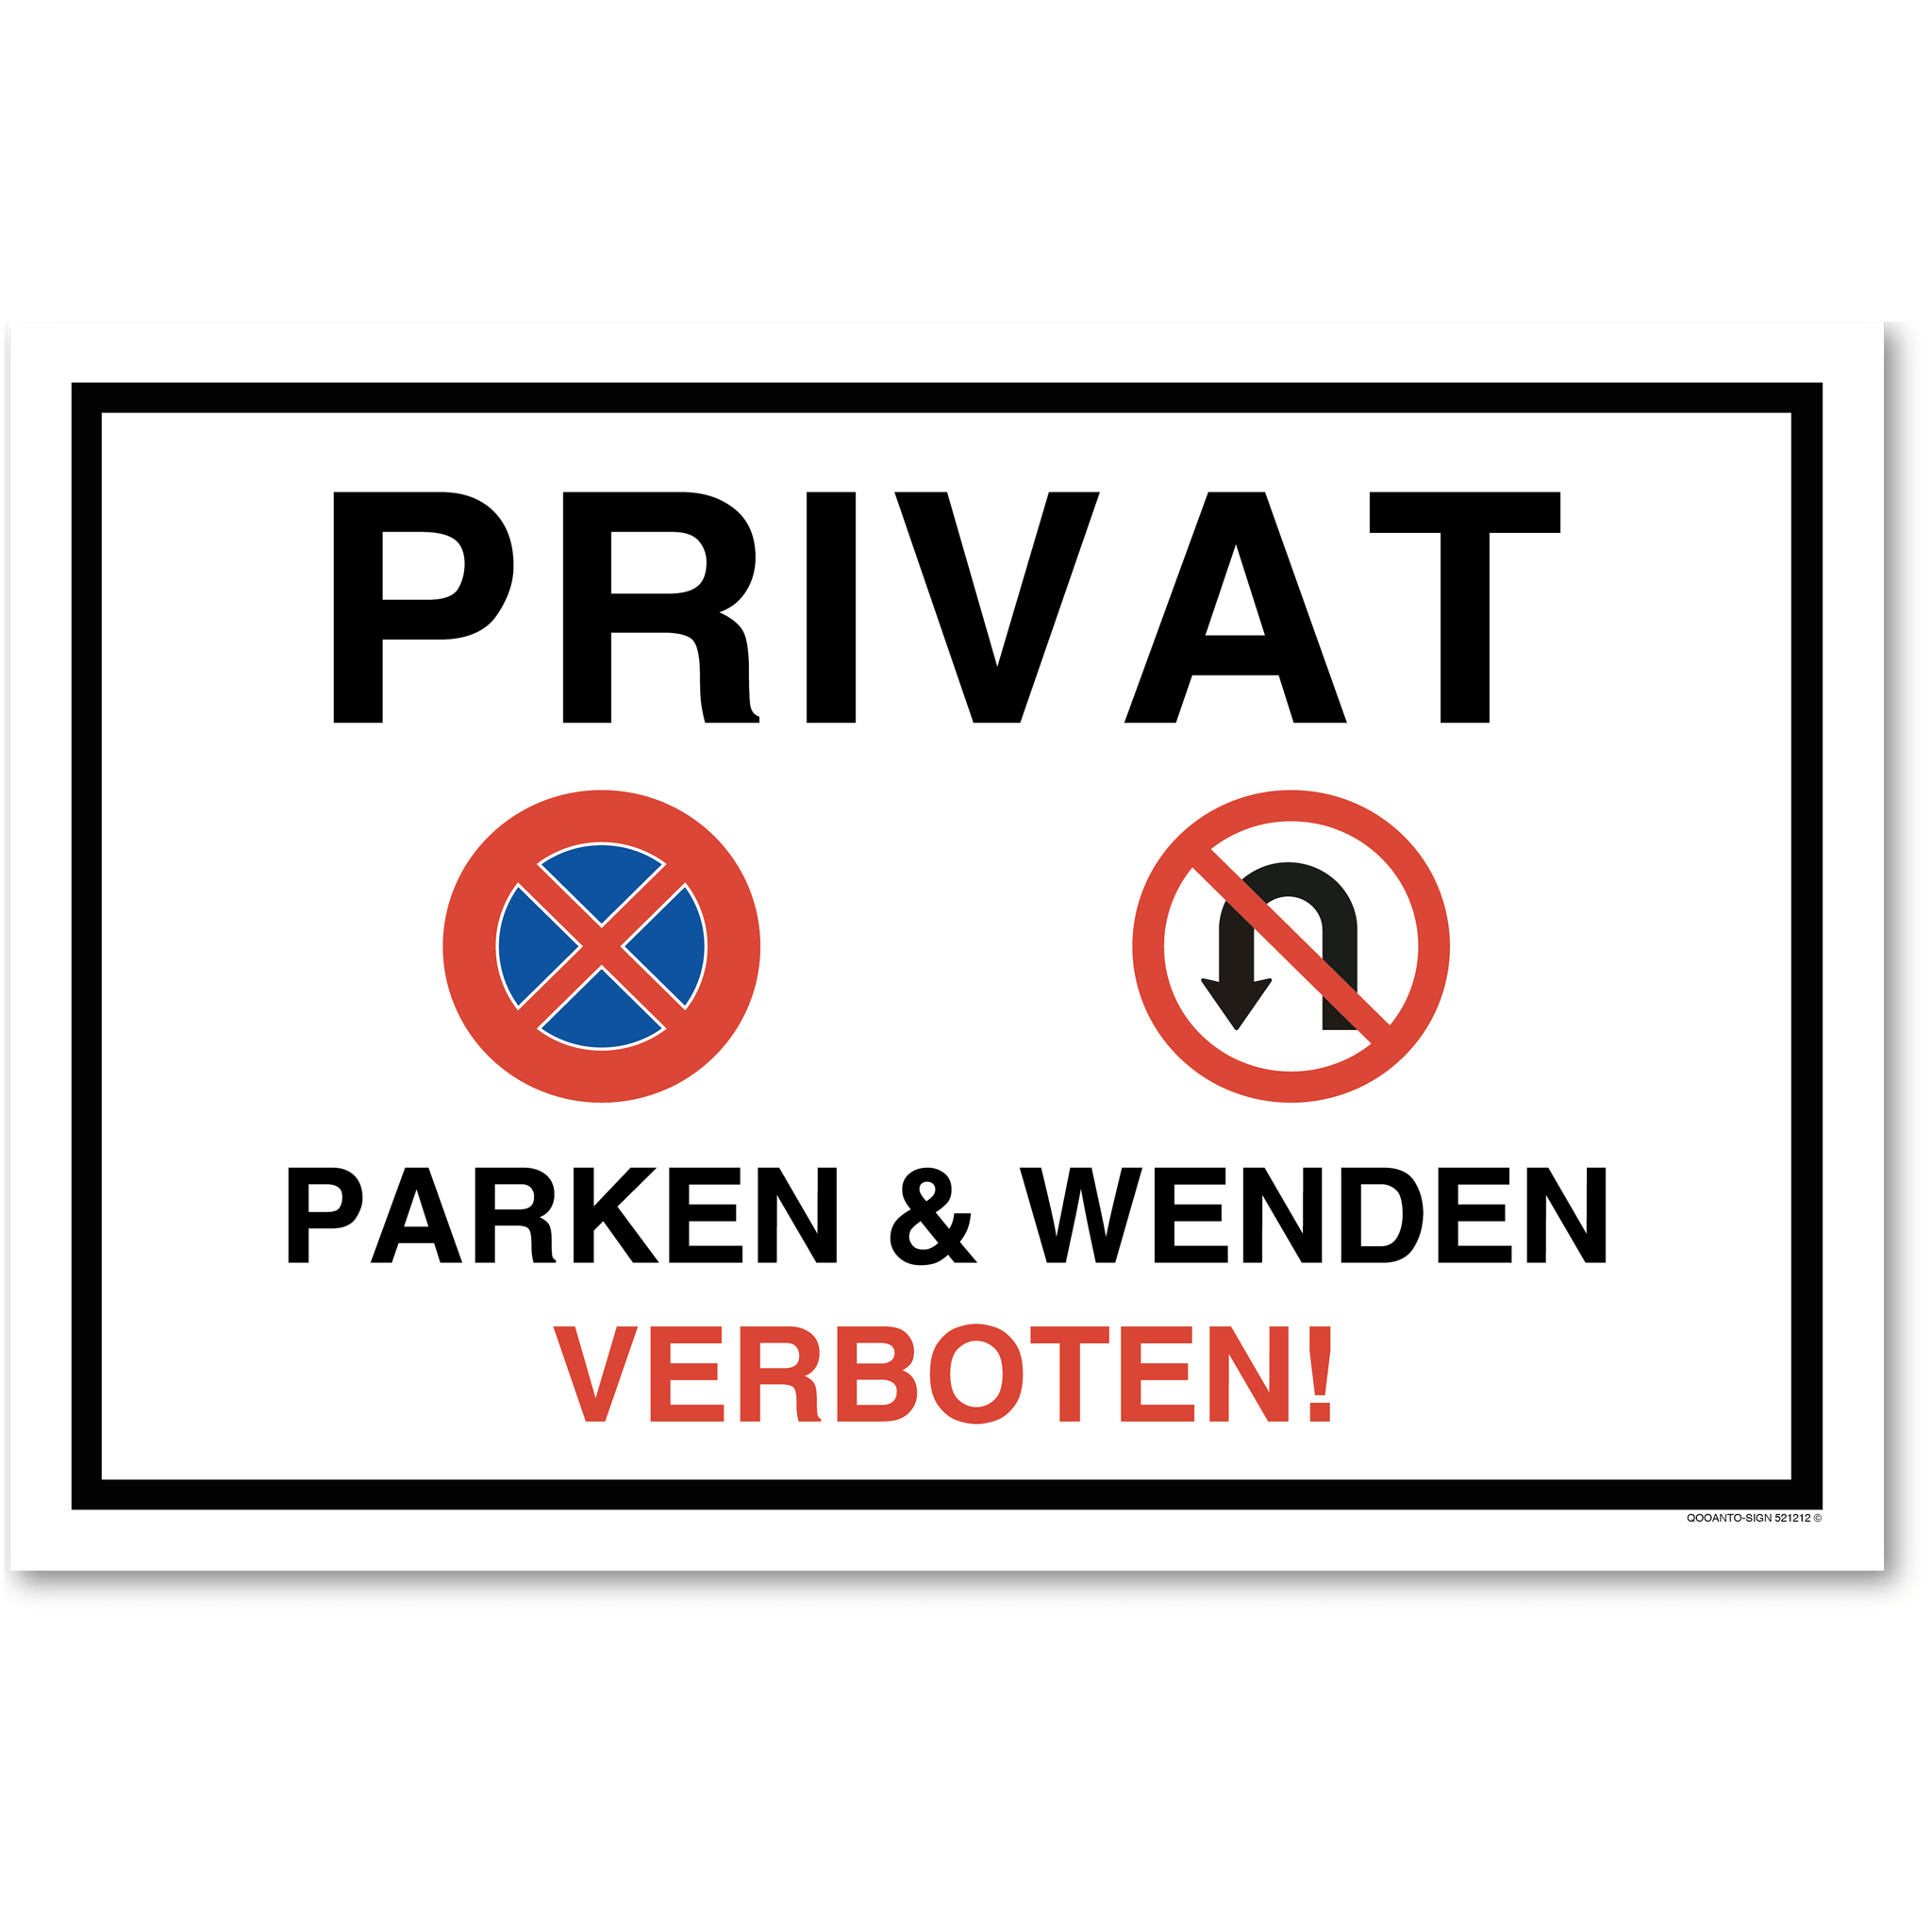 Privat PARKEN & WENDEN VERBOTEN!, Schild